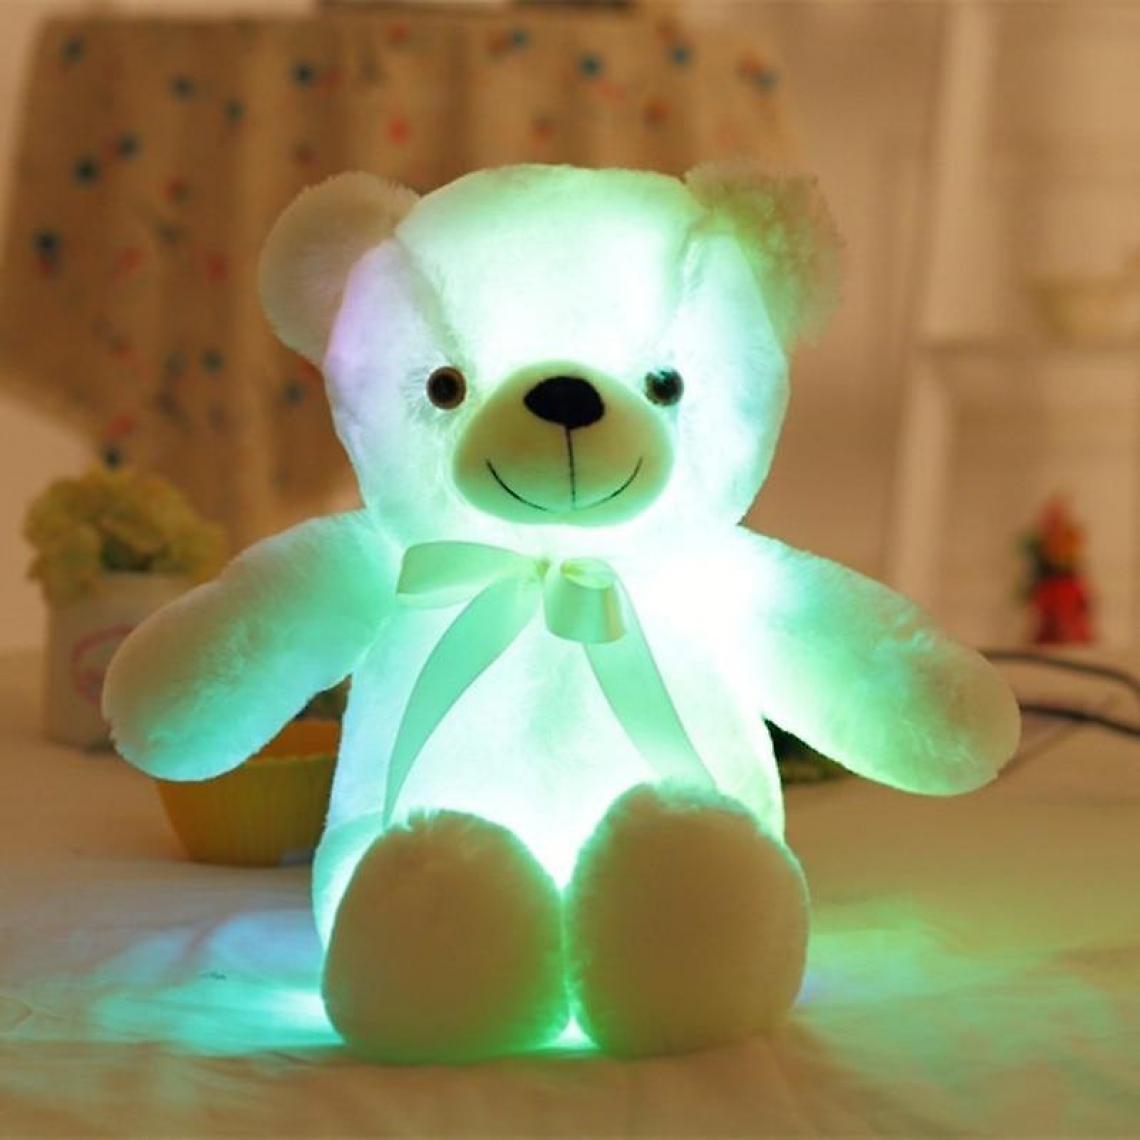 Universal - Grand ours en peluche lumineux coloré Peluche lumineuse - ours en peluche LED allumé (jaune) - Doudous